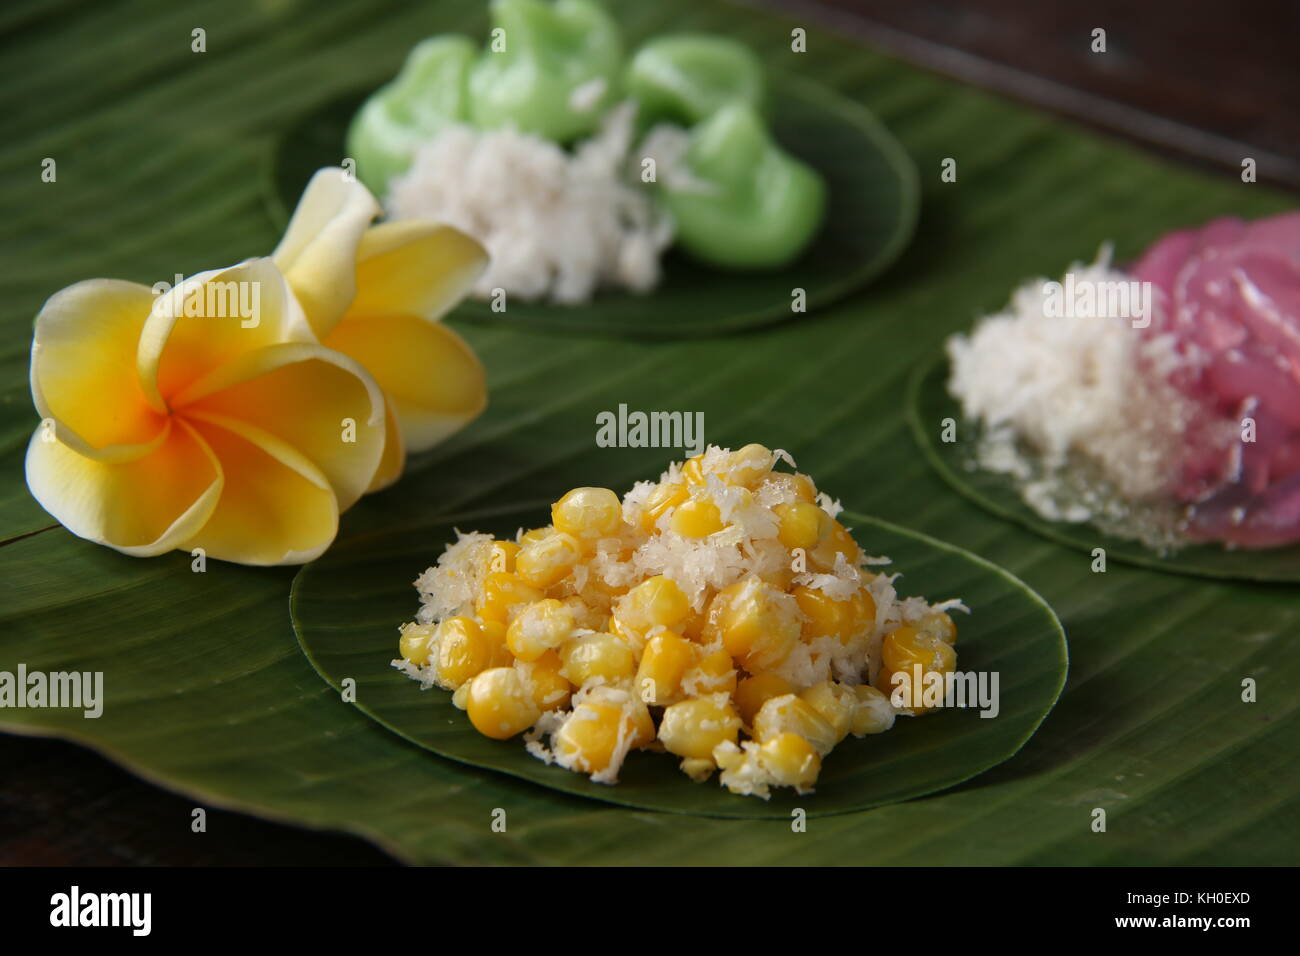 Urap jagung, stile balinese tradizionale snack dolci di chicchi di mais con cocco grattugiato e zucchero Foto Stock